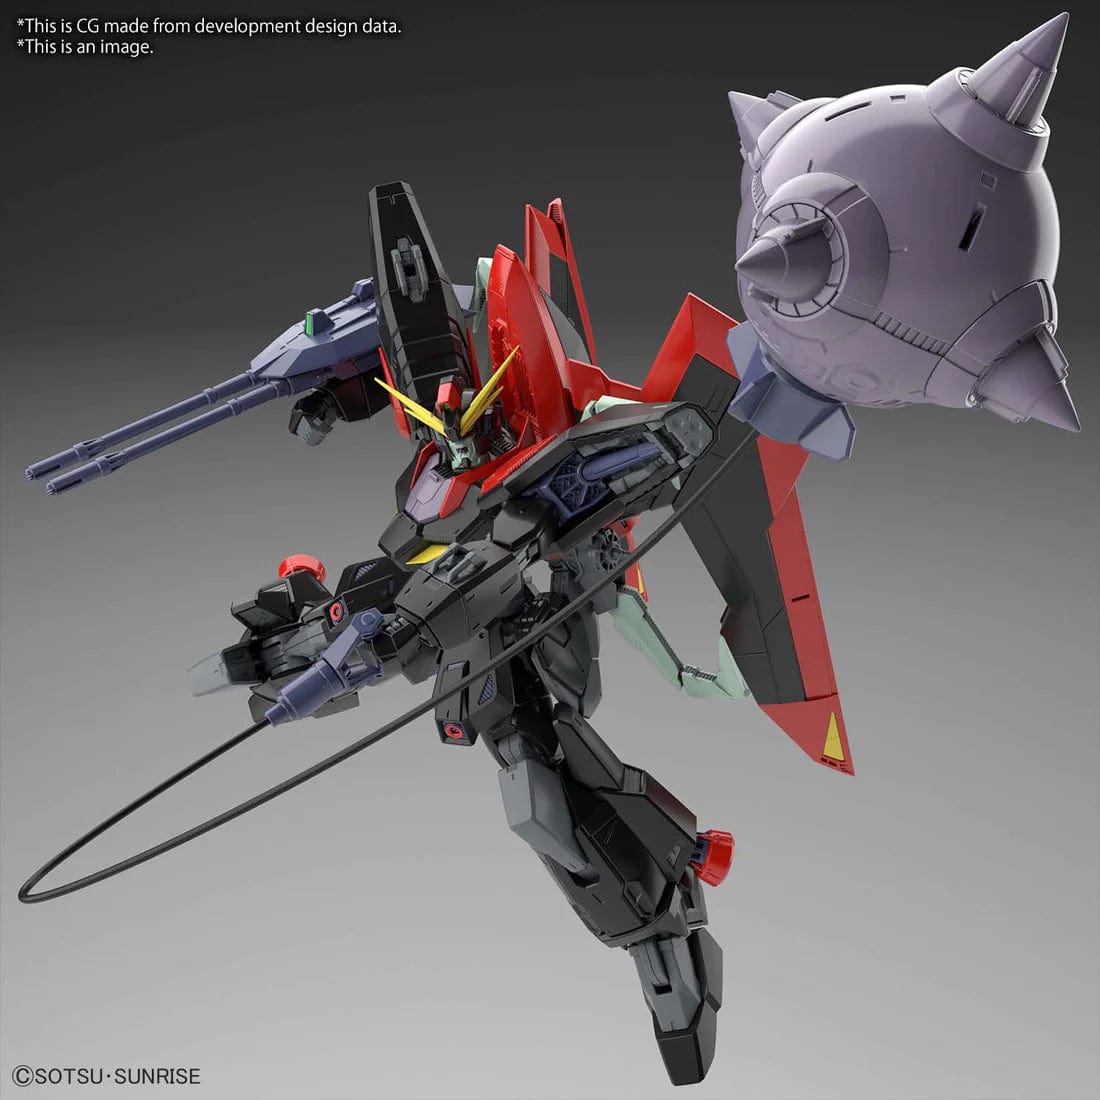 The Lair Full Mechanics Raider Gundam